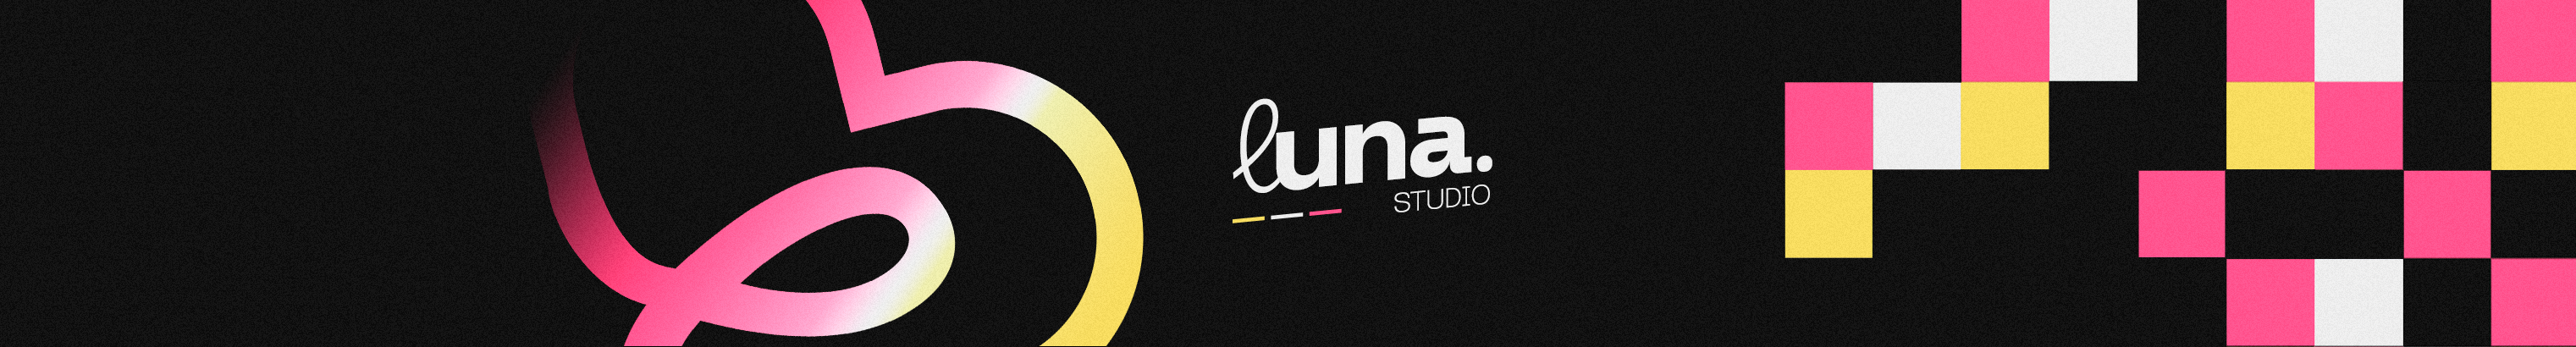 luna .'s profile banner